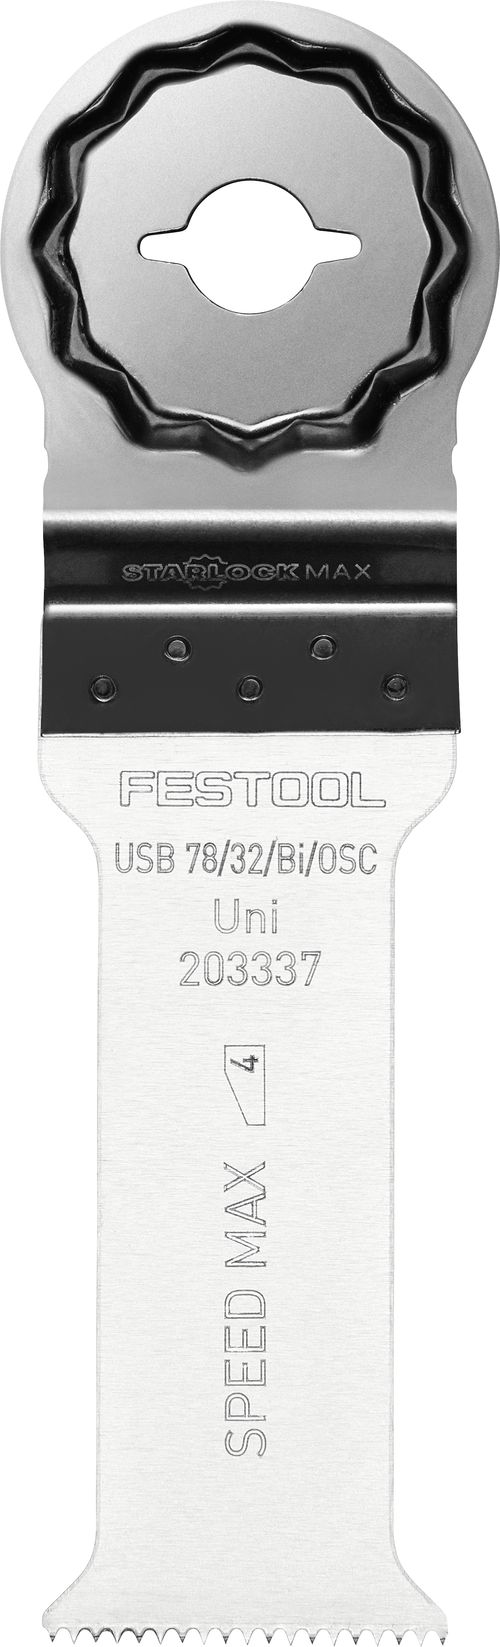 Univerzální pilový kotouc USB 78/32/Bi/OSC/5